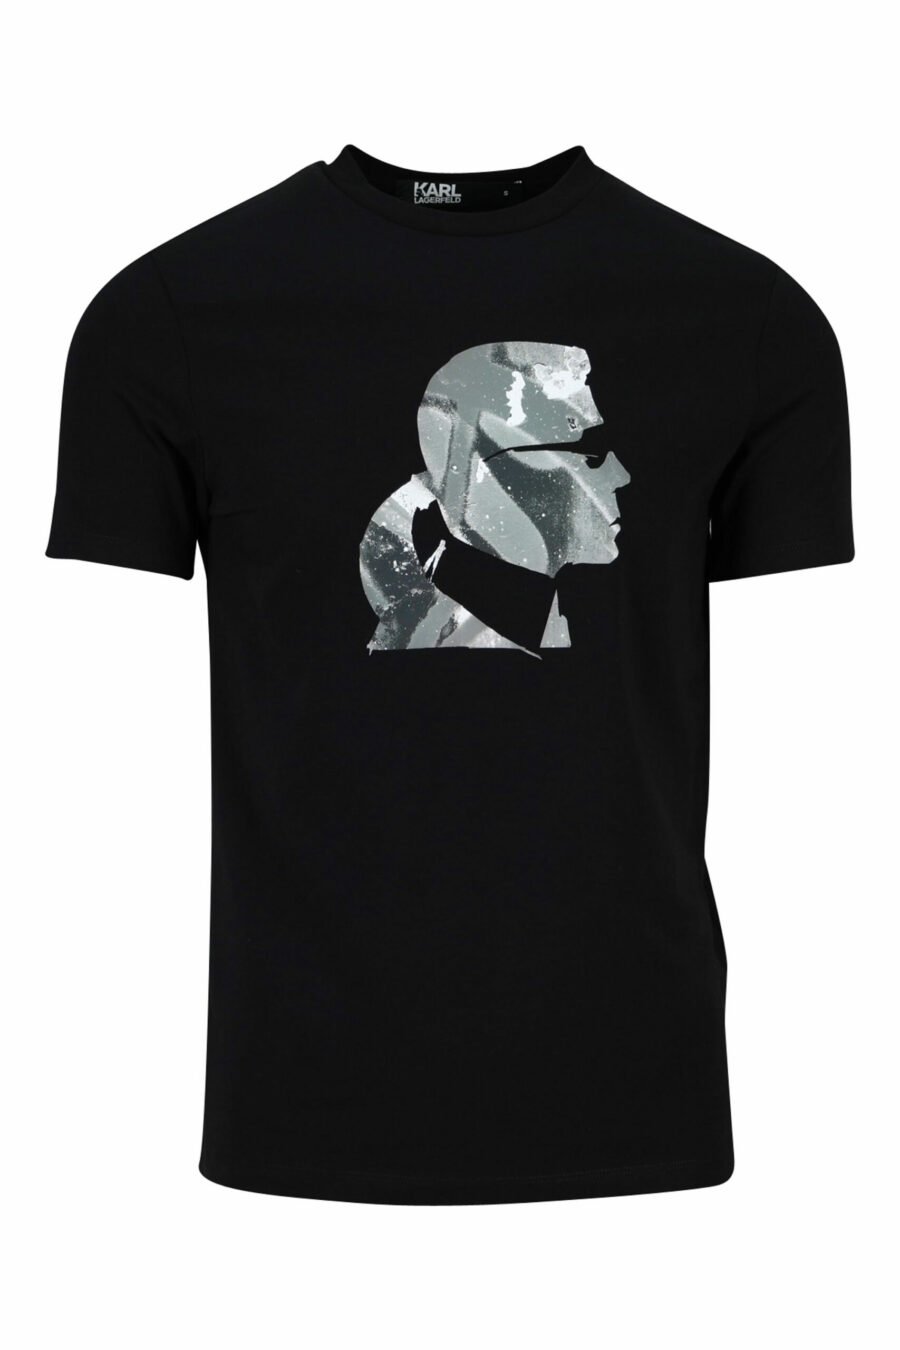 Schwarzes T-Shirt mit "karl" Tarnprofil - 4062226401906 skaliert